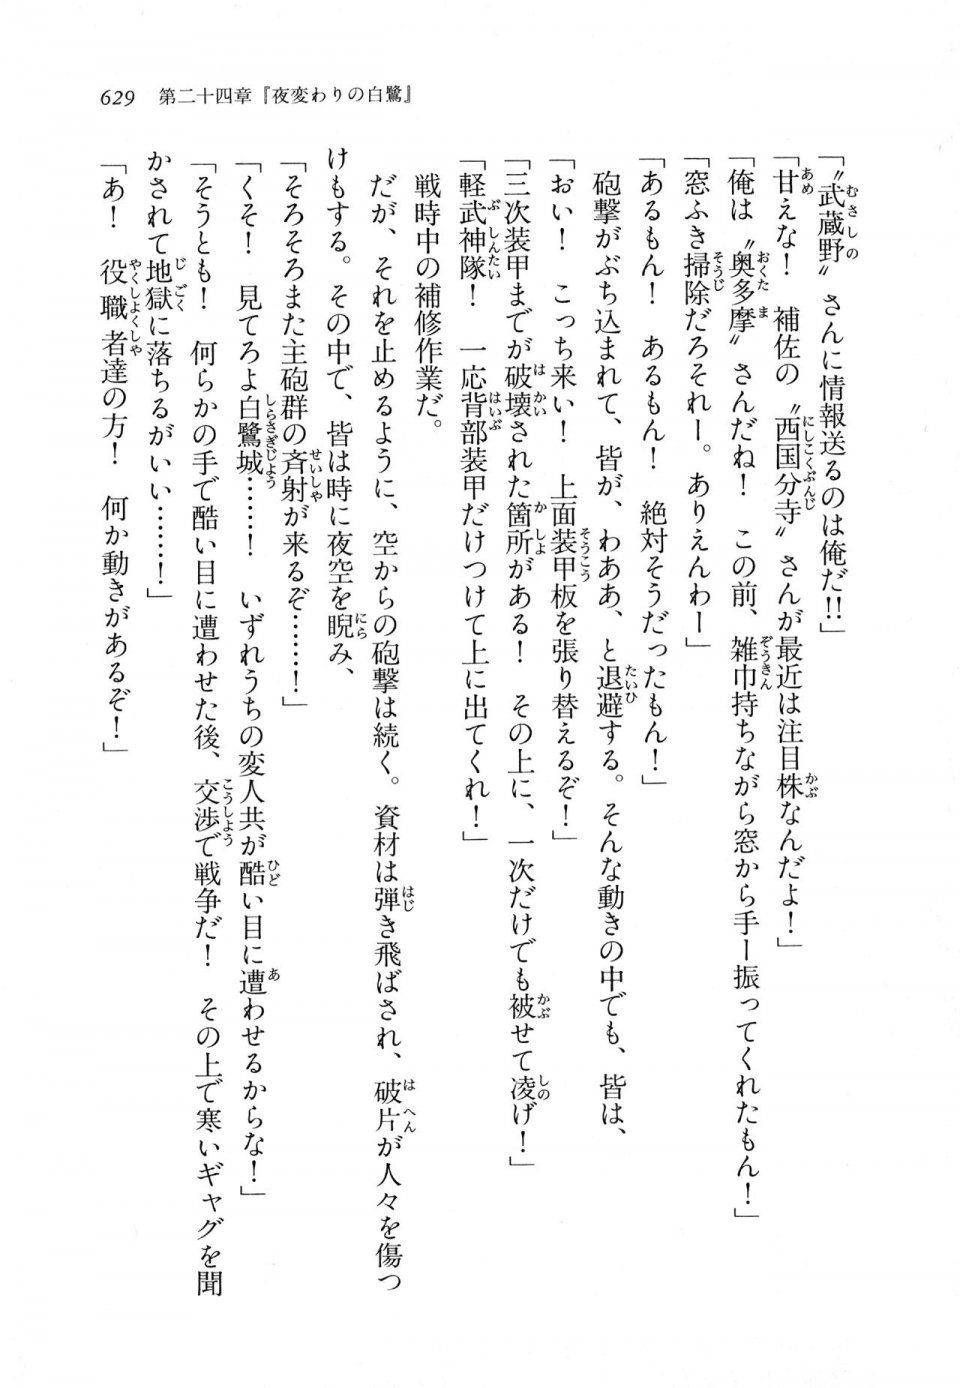 Kyoukai Senjou no Horizon LN Vol 11(5A) - Photo #629